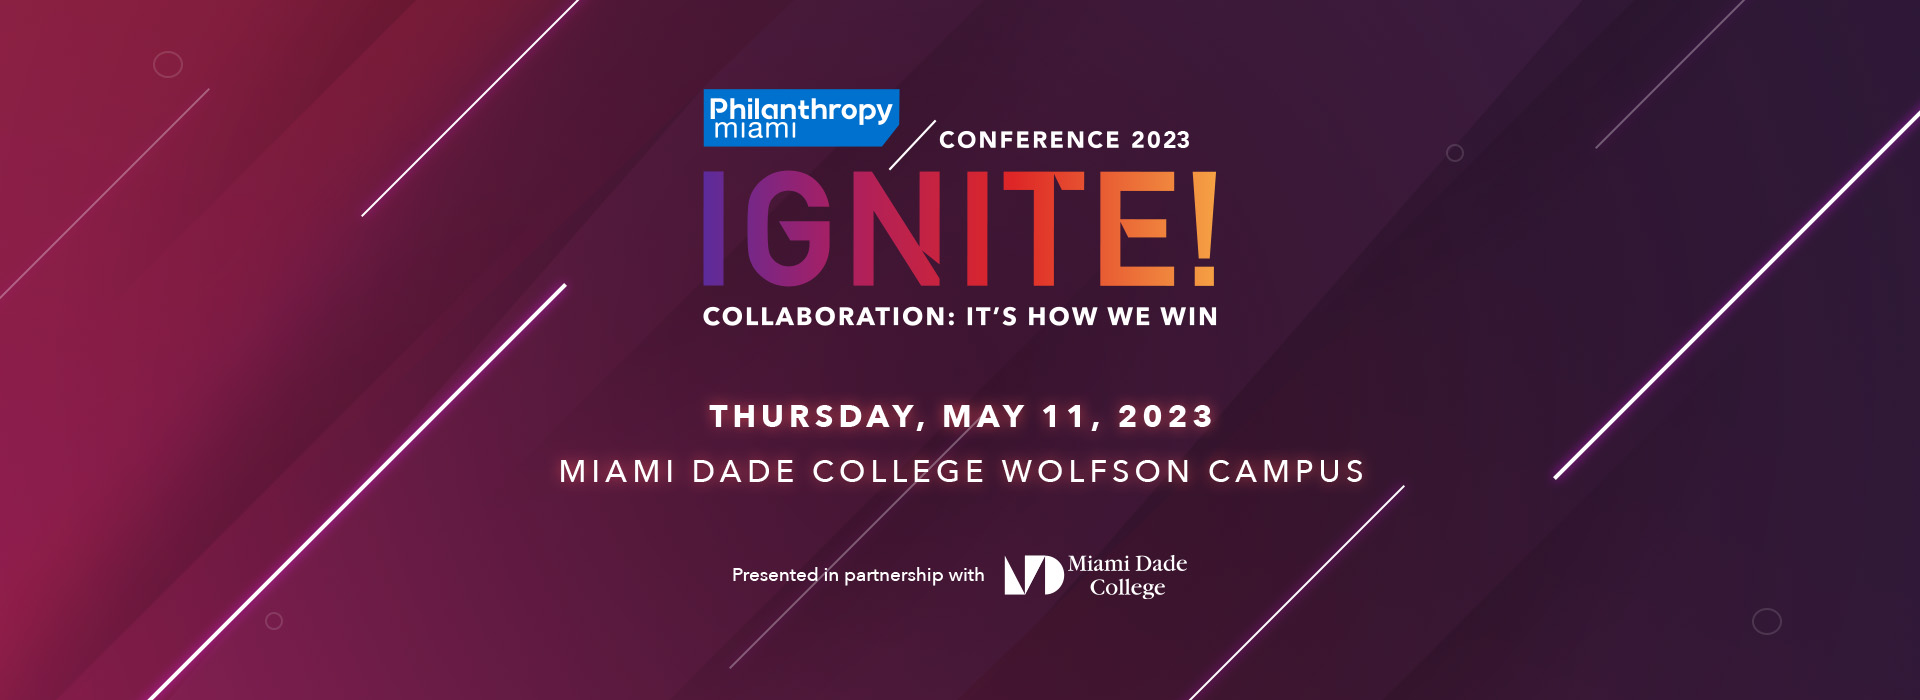 Philanthropy Miami Ignite Conference 2020